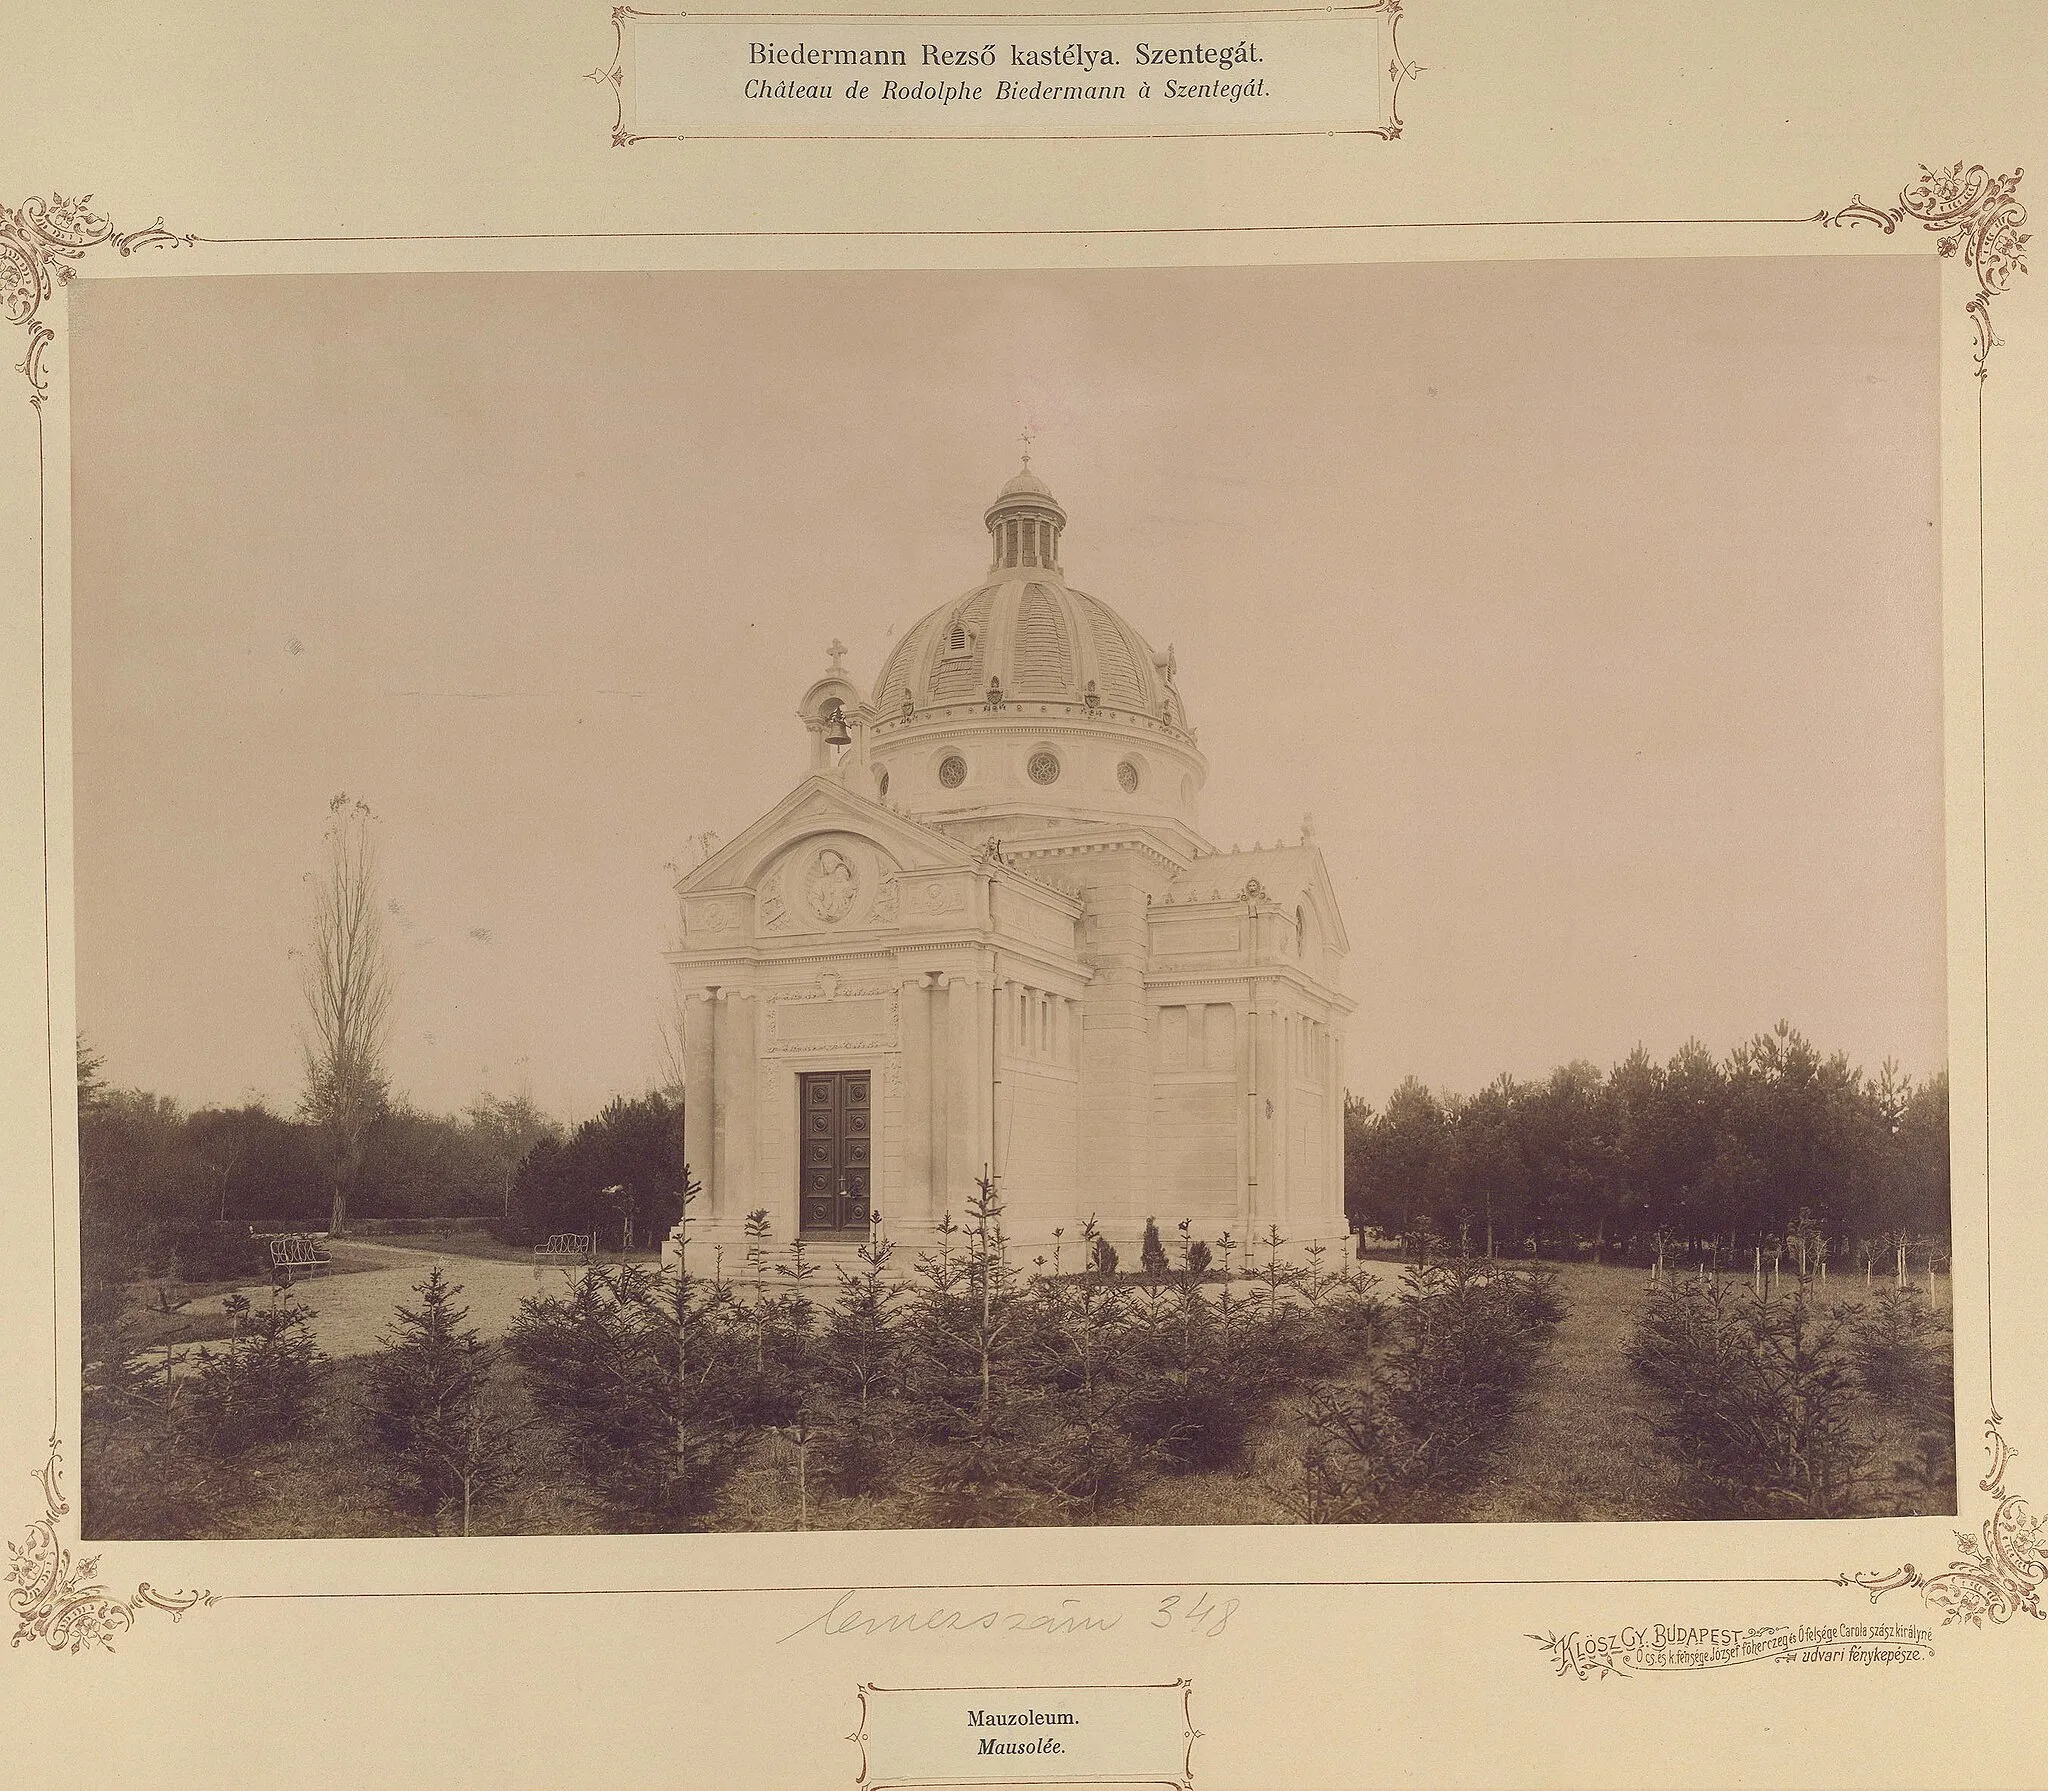 Photo showing: a Biedermann-család mauzóleuma. A felvétel 1895-1899 között készült. A kép forrását kérjük így adja meg: Fortepan / Budapest Főváros Levéltára. Levéltári jelzet: HU.BFL.XV.19.d.1.13.058